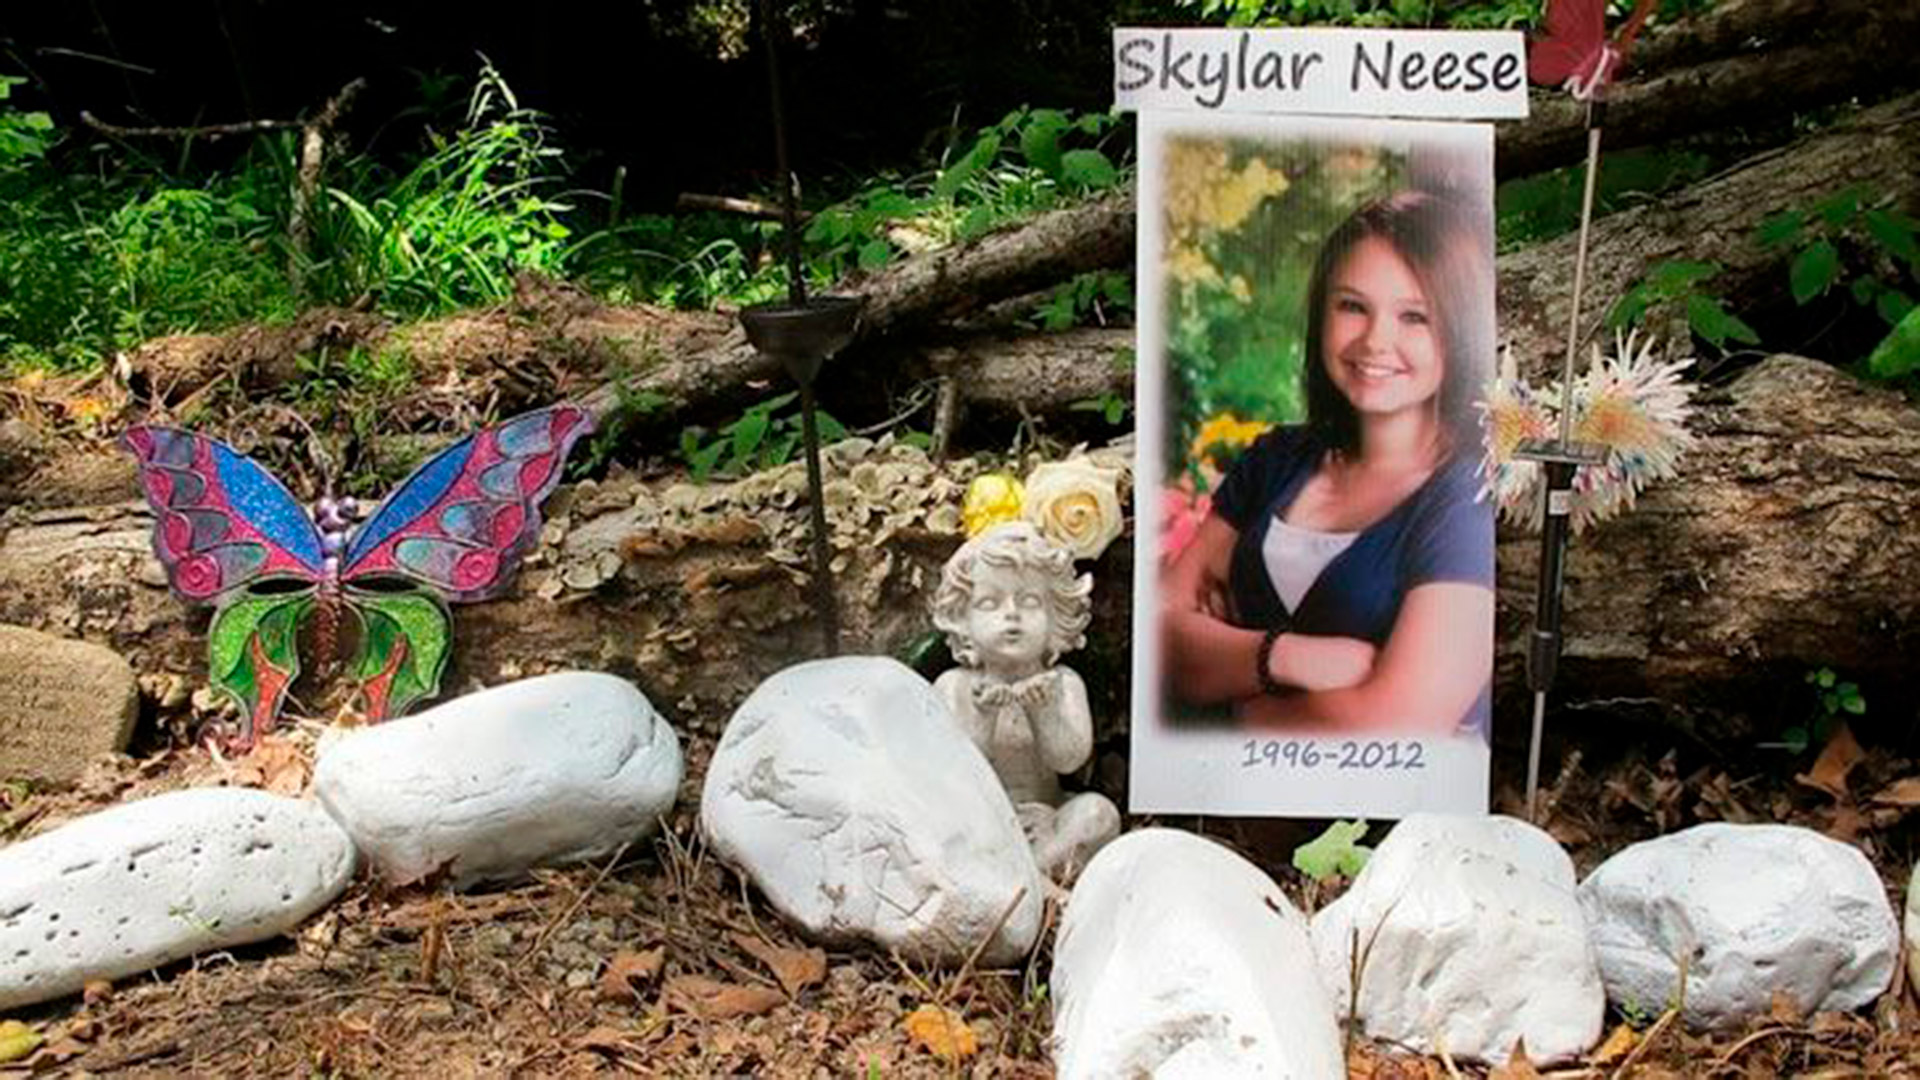 El recuerdo de la joven asesinada en el bosque donde hallaron su cuerpo